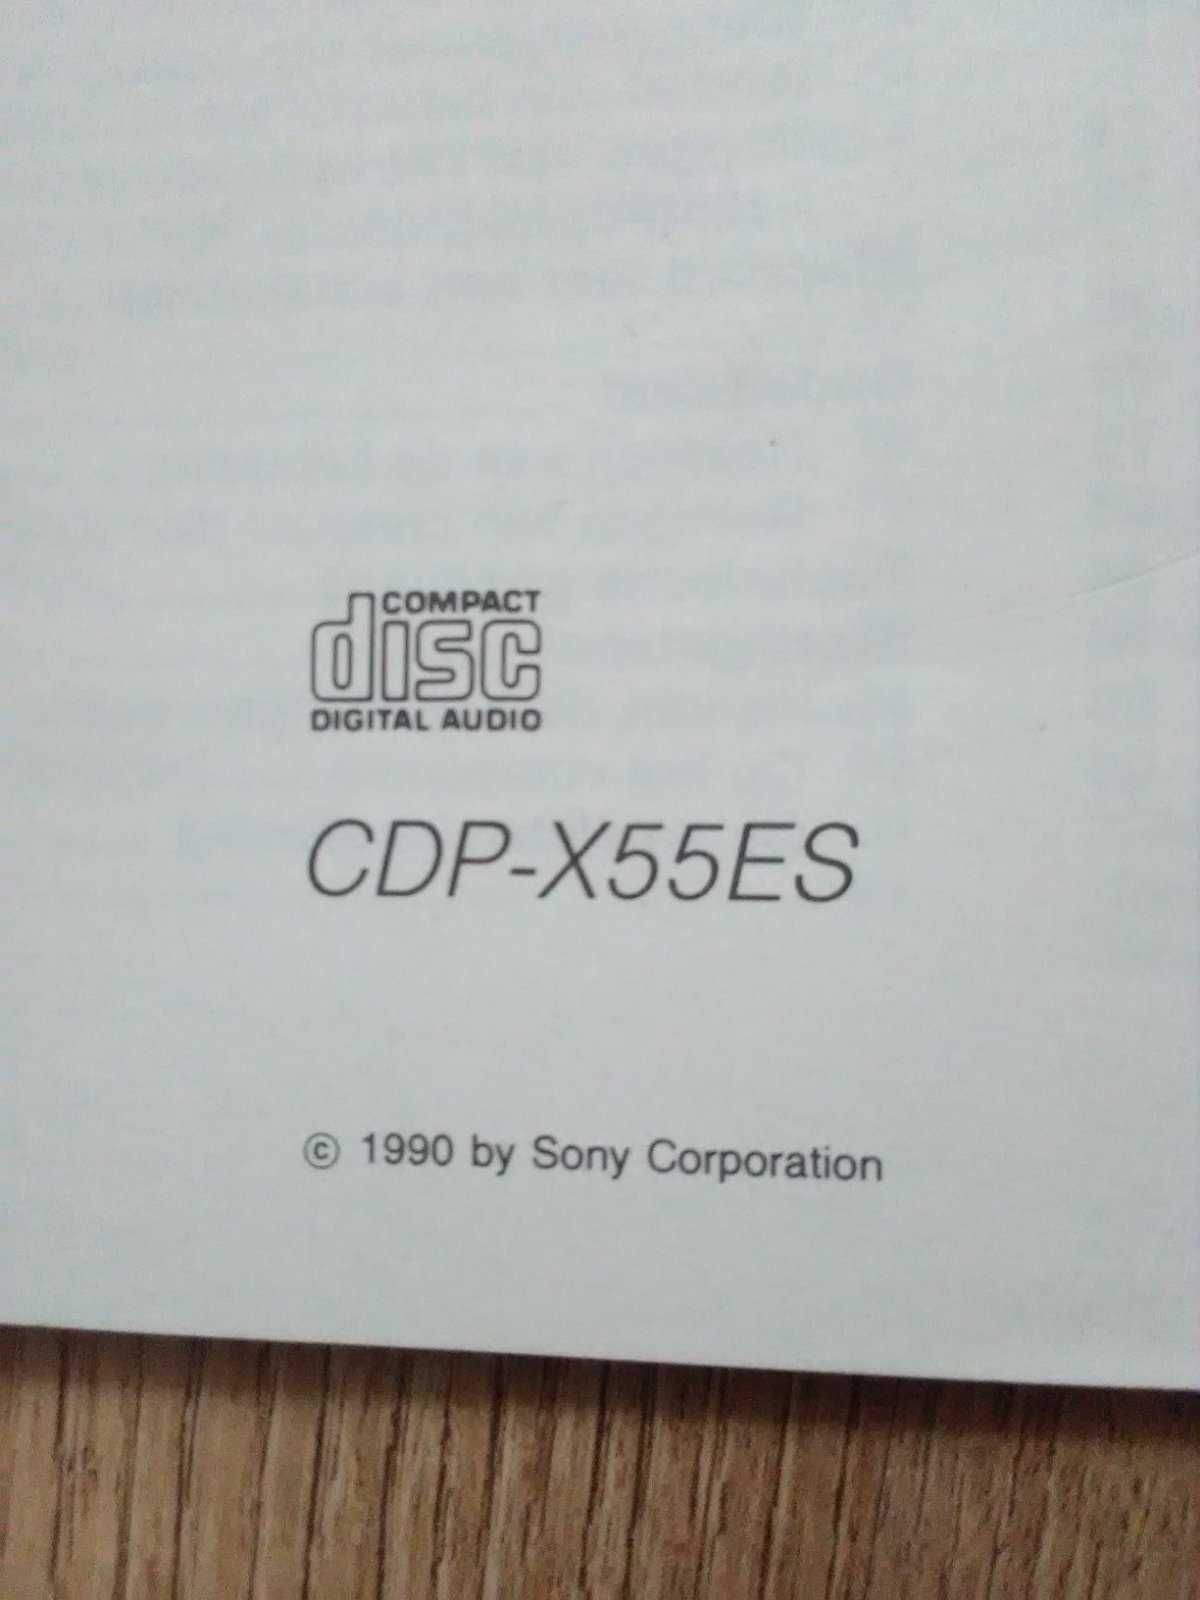 Manual, Инструкция CD проигрыватель Technics sl p2000,770, Sony x55es.